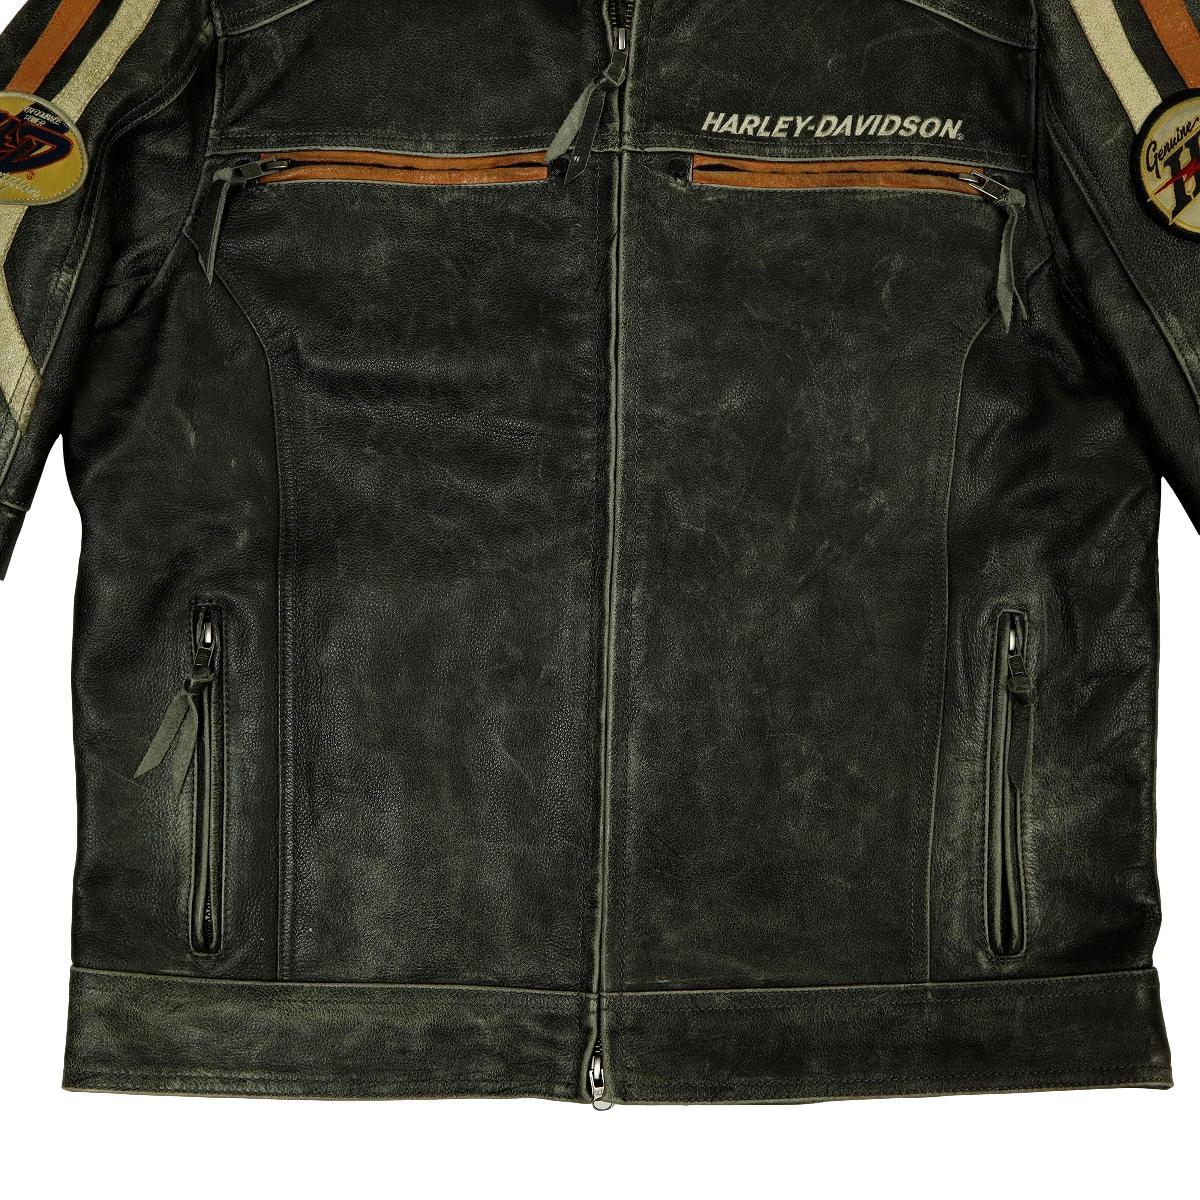 [S1231][ превосходный товар ][USED обработка ]HARLEY-DAVIDSON Harley Davidson одиночный байкерская куртка кожаный жакет мотоциклетная экипировка 